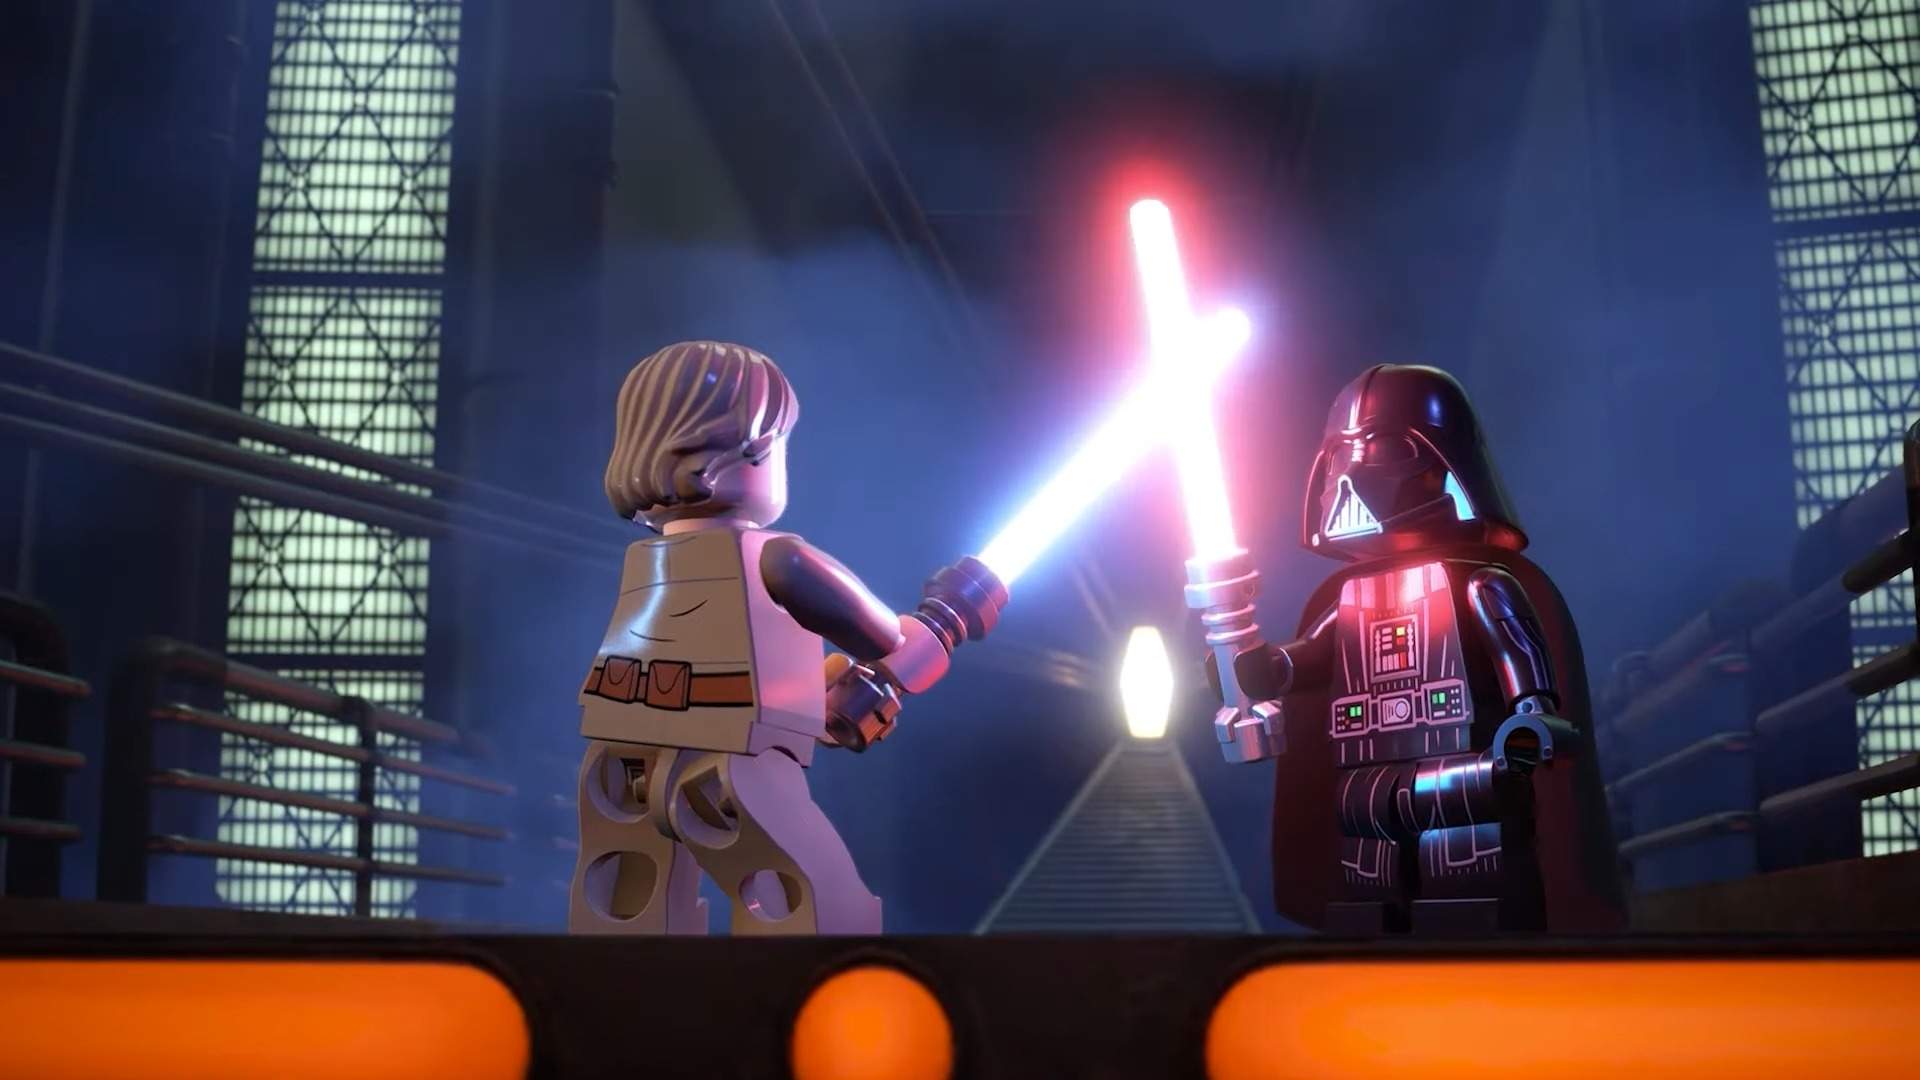 Jogo Lego Star Wars: O Despertar Da Força Xbox 360 Warner Bros com